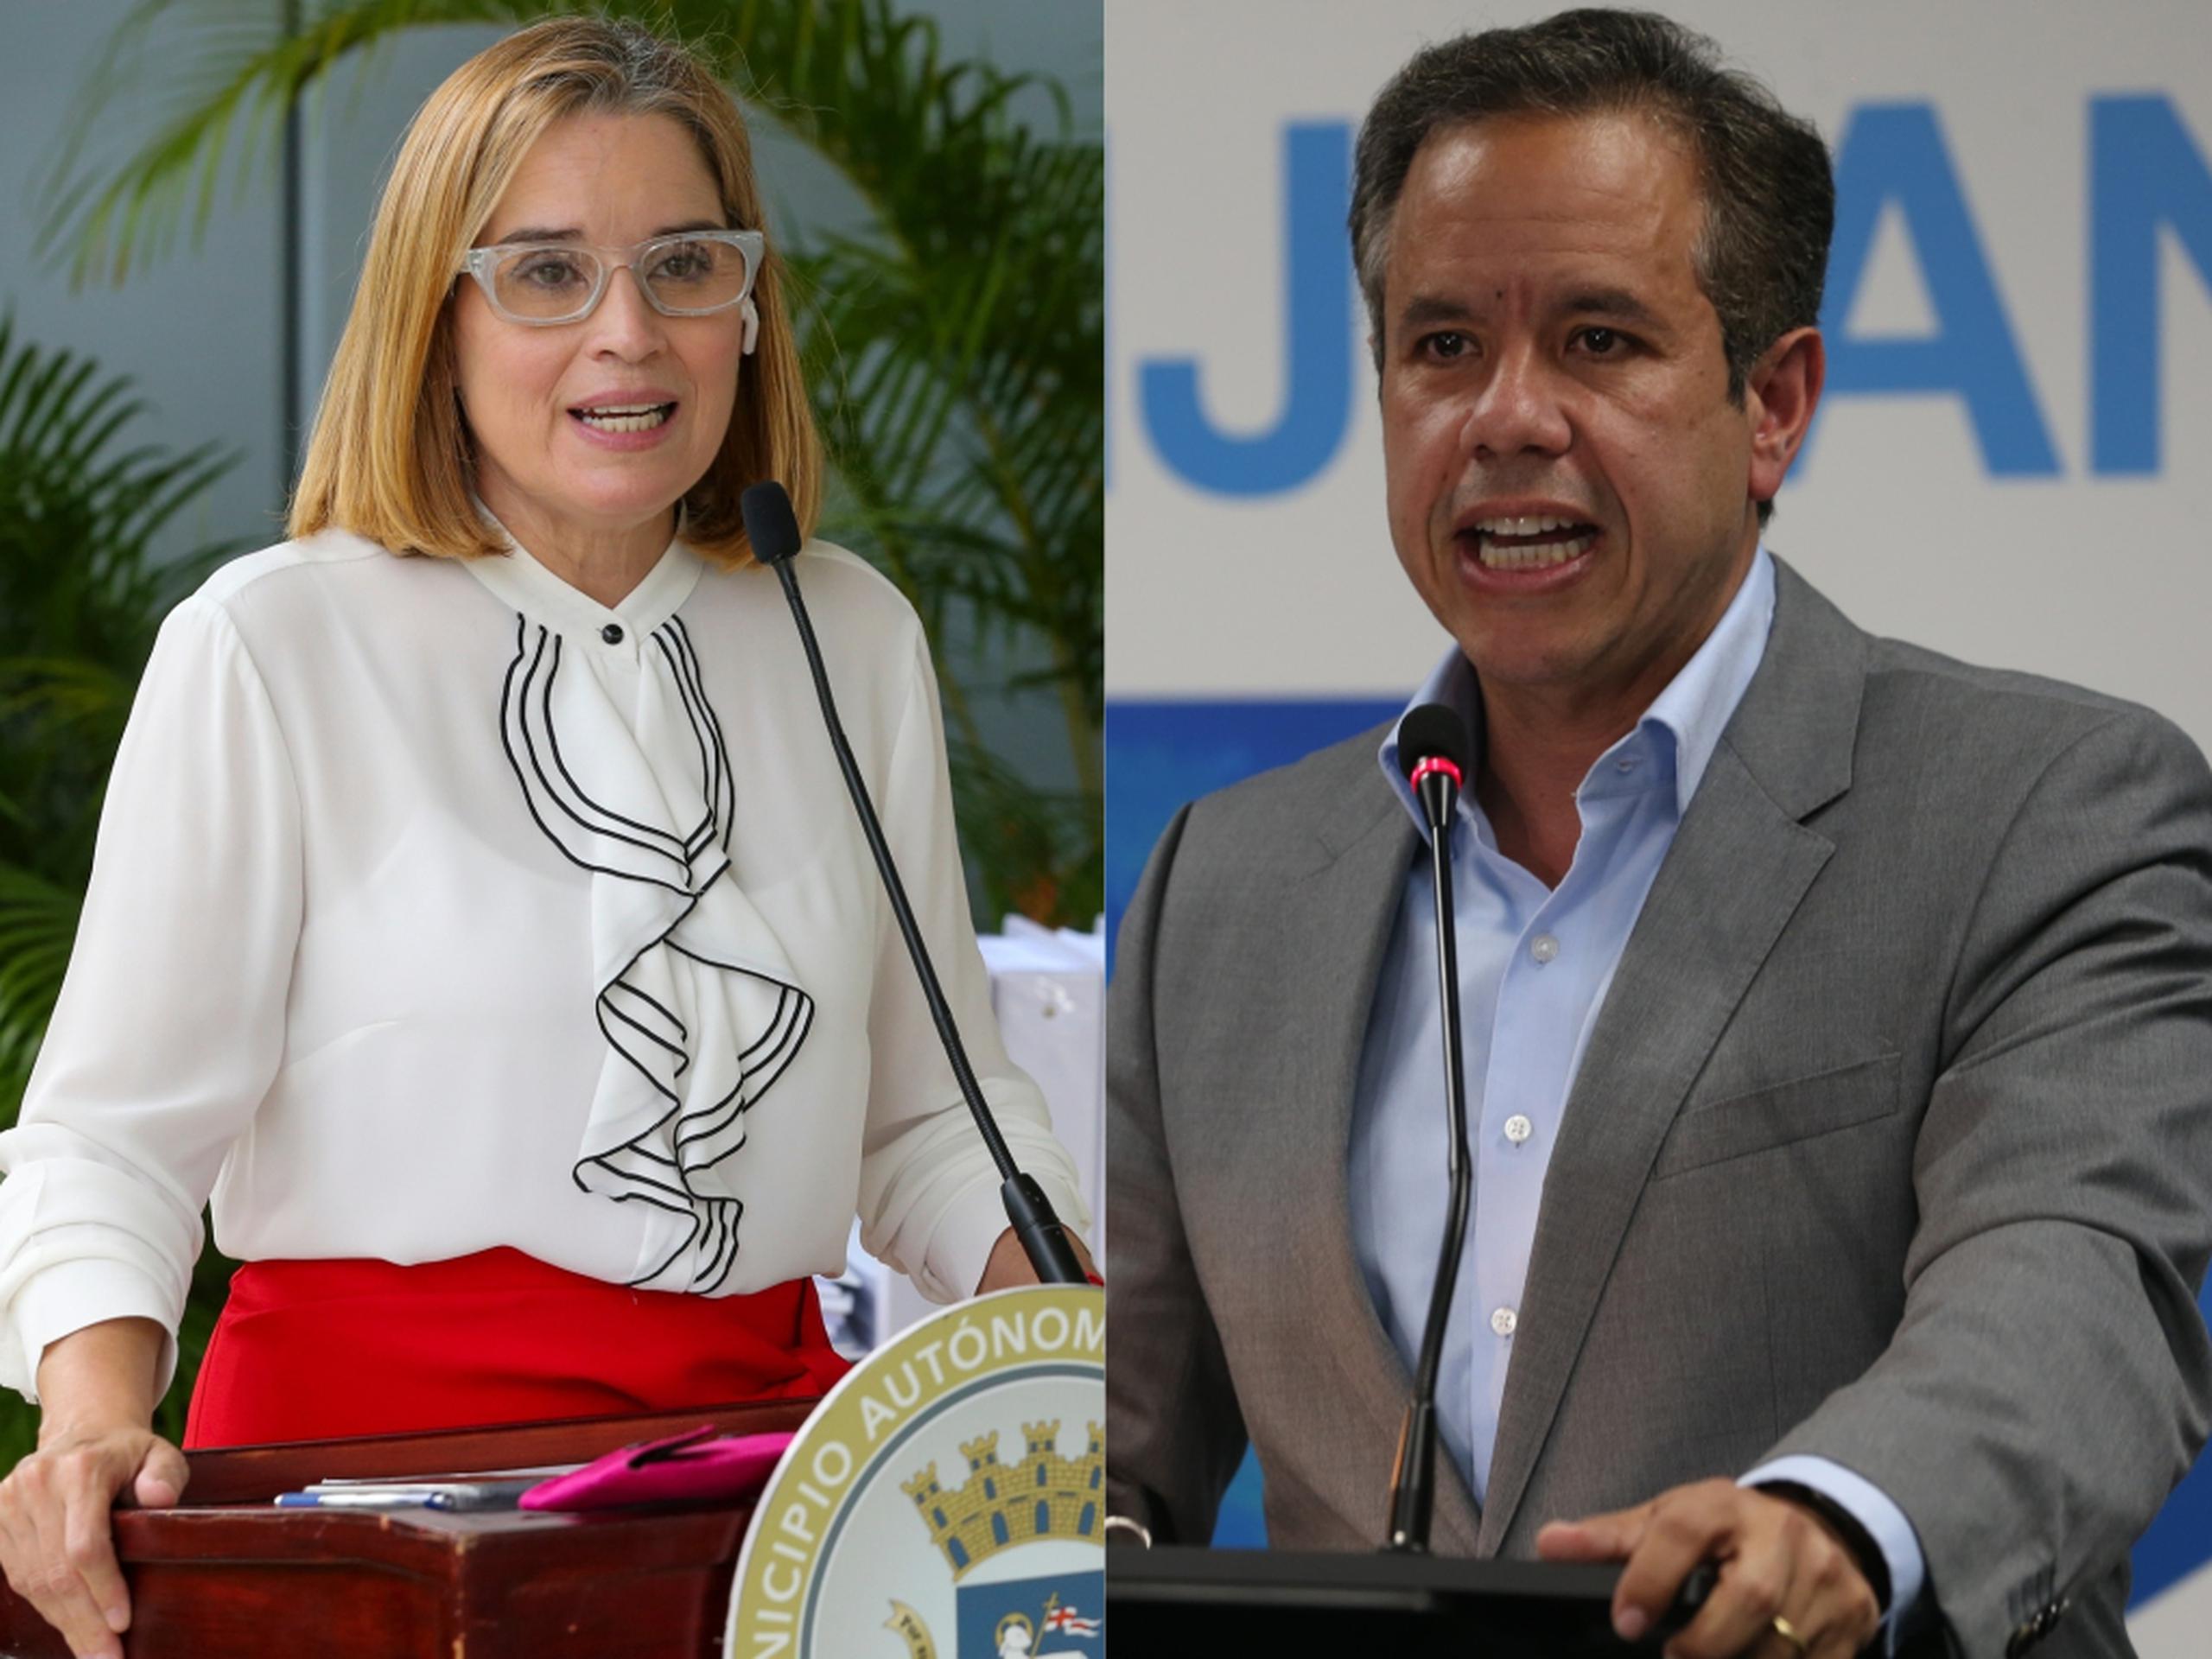 La alcaldesa saliente de San Juan, Carmen Yulín Cruz, y el senador novoprogresista Miguel Romero, quien ganó la contienda por la alcaldía de la capital. (GFR Media)